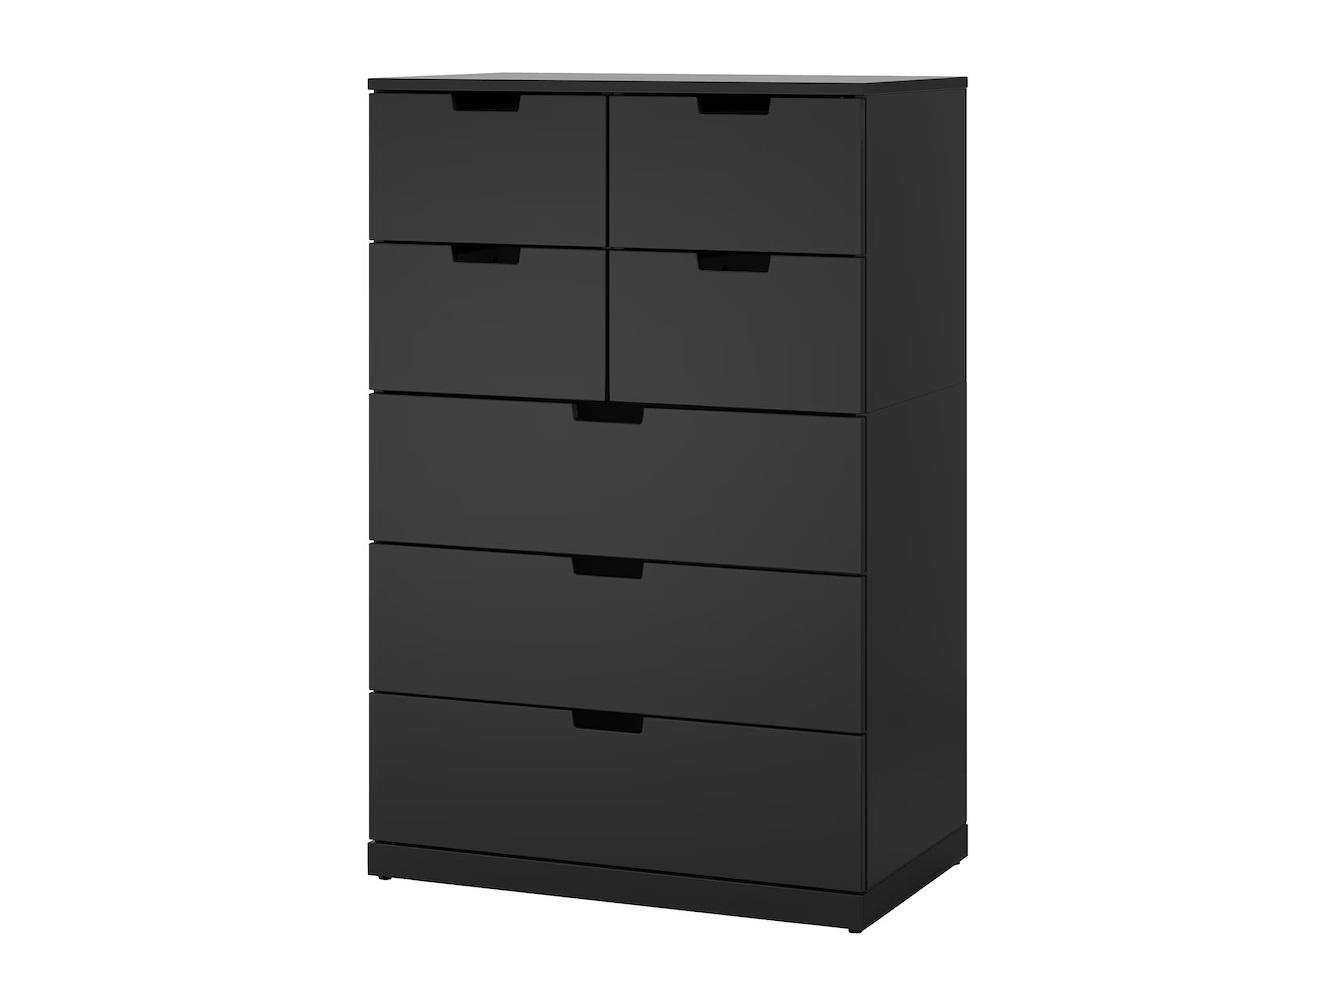 Комод Нордли 15 black ИКЕА (IKEA) изображение товара